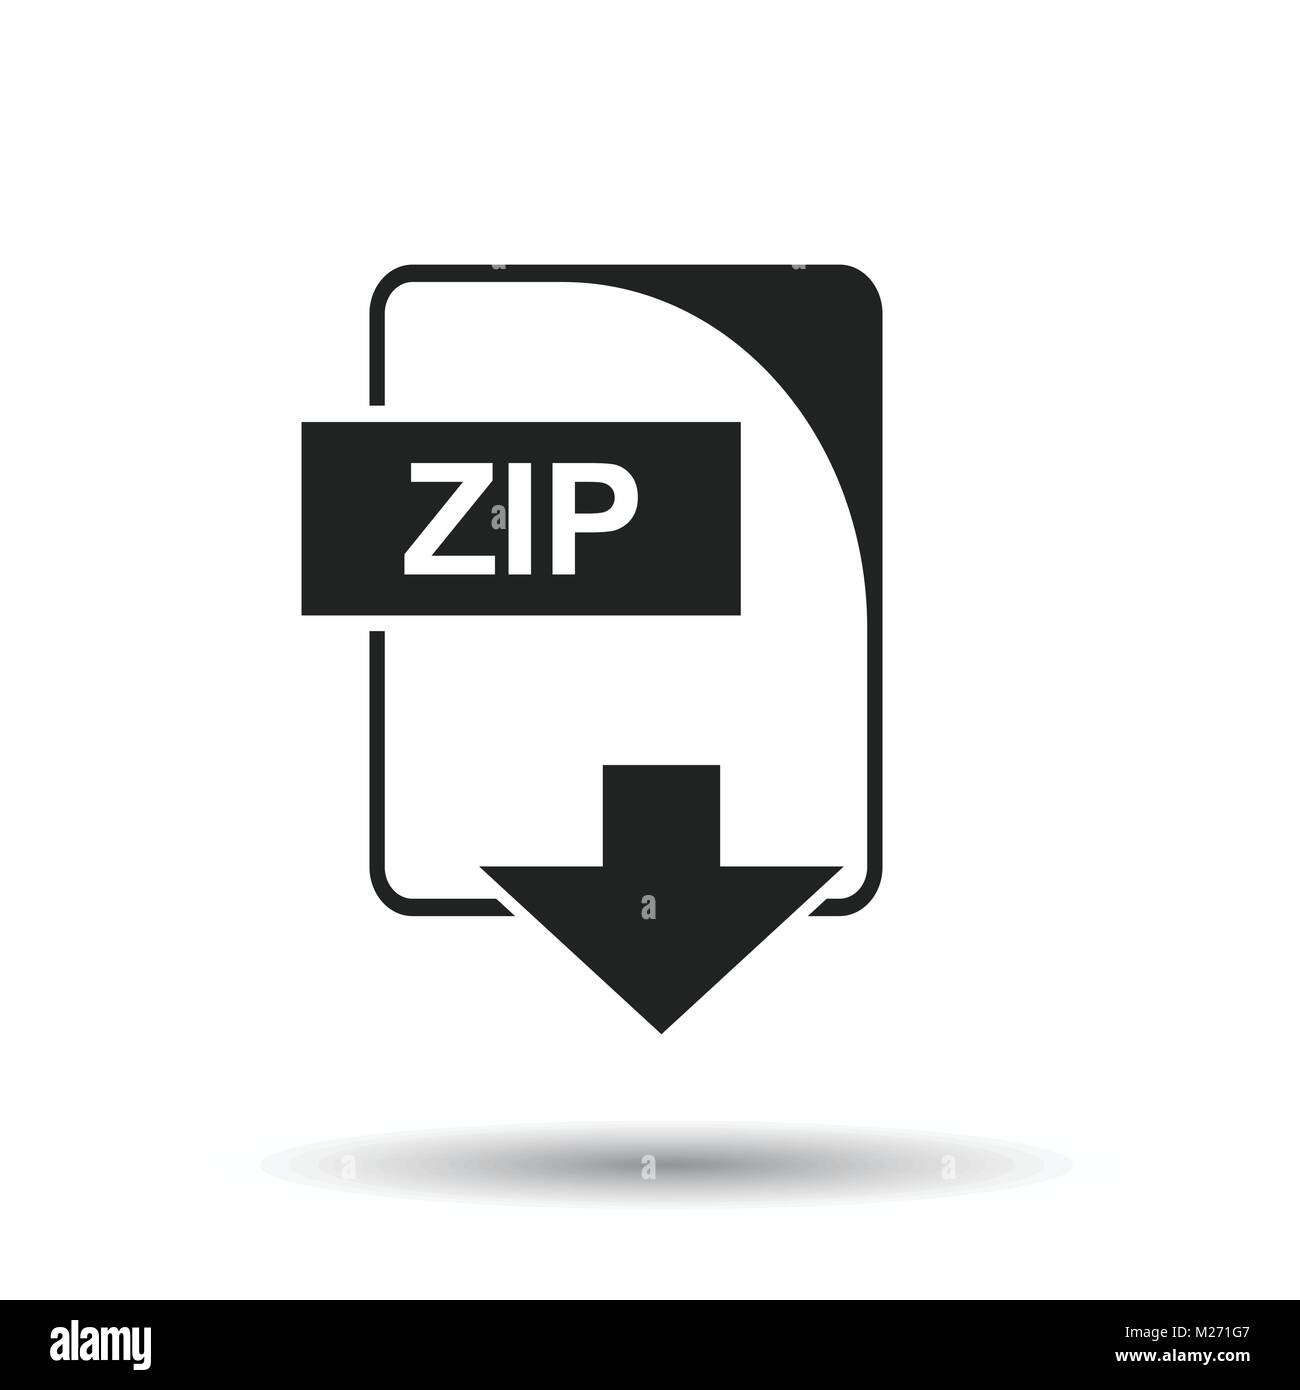 Zip Vector Vectors Stock Photos & Zip Vector Vectors Stock Images - Alamy